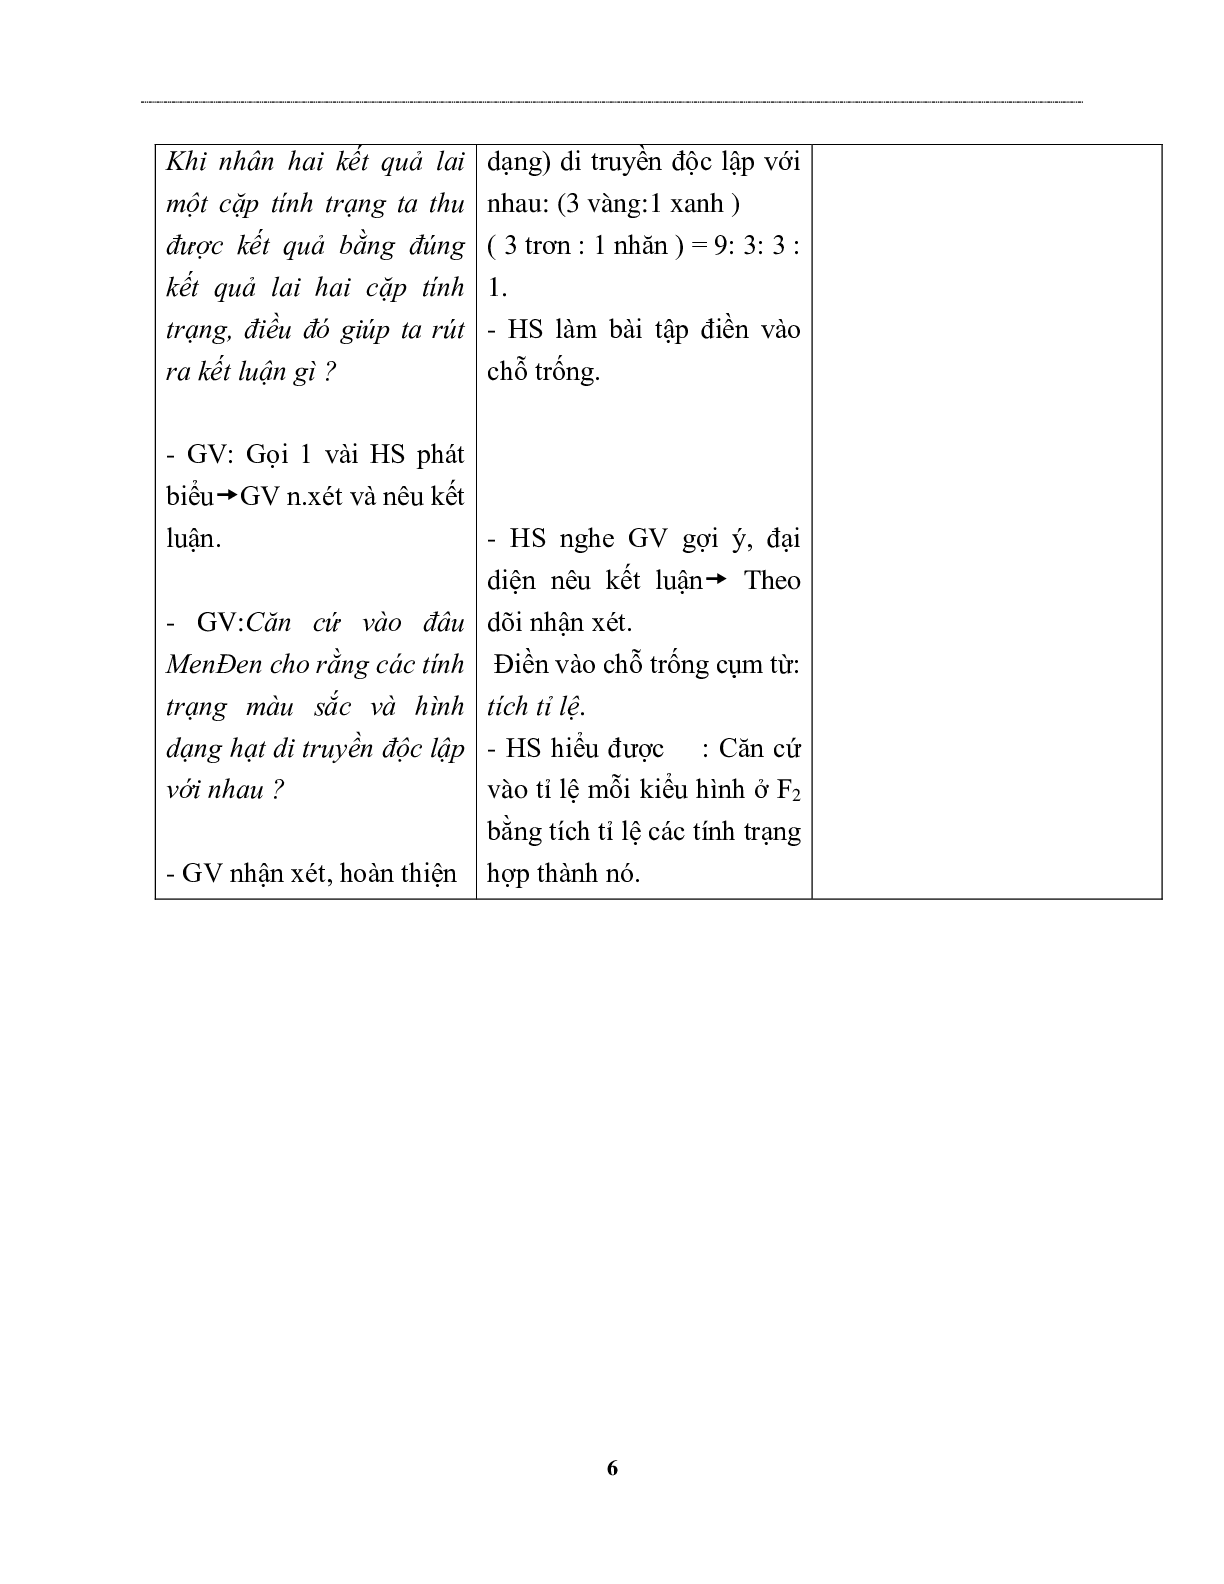 Giáo án Sinh học 9 Bài 4: Lai hai cặp tính trạng mới nhất - CV5555 (trang 6)